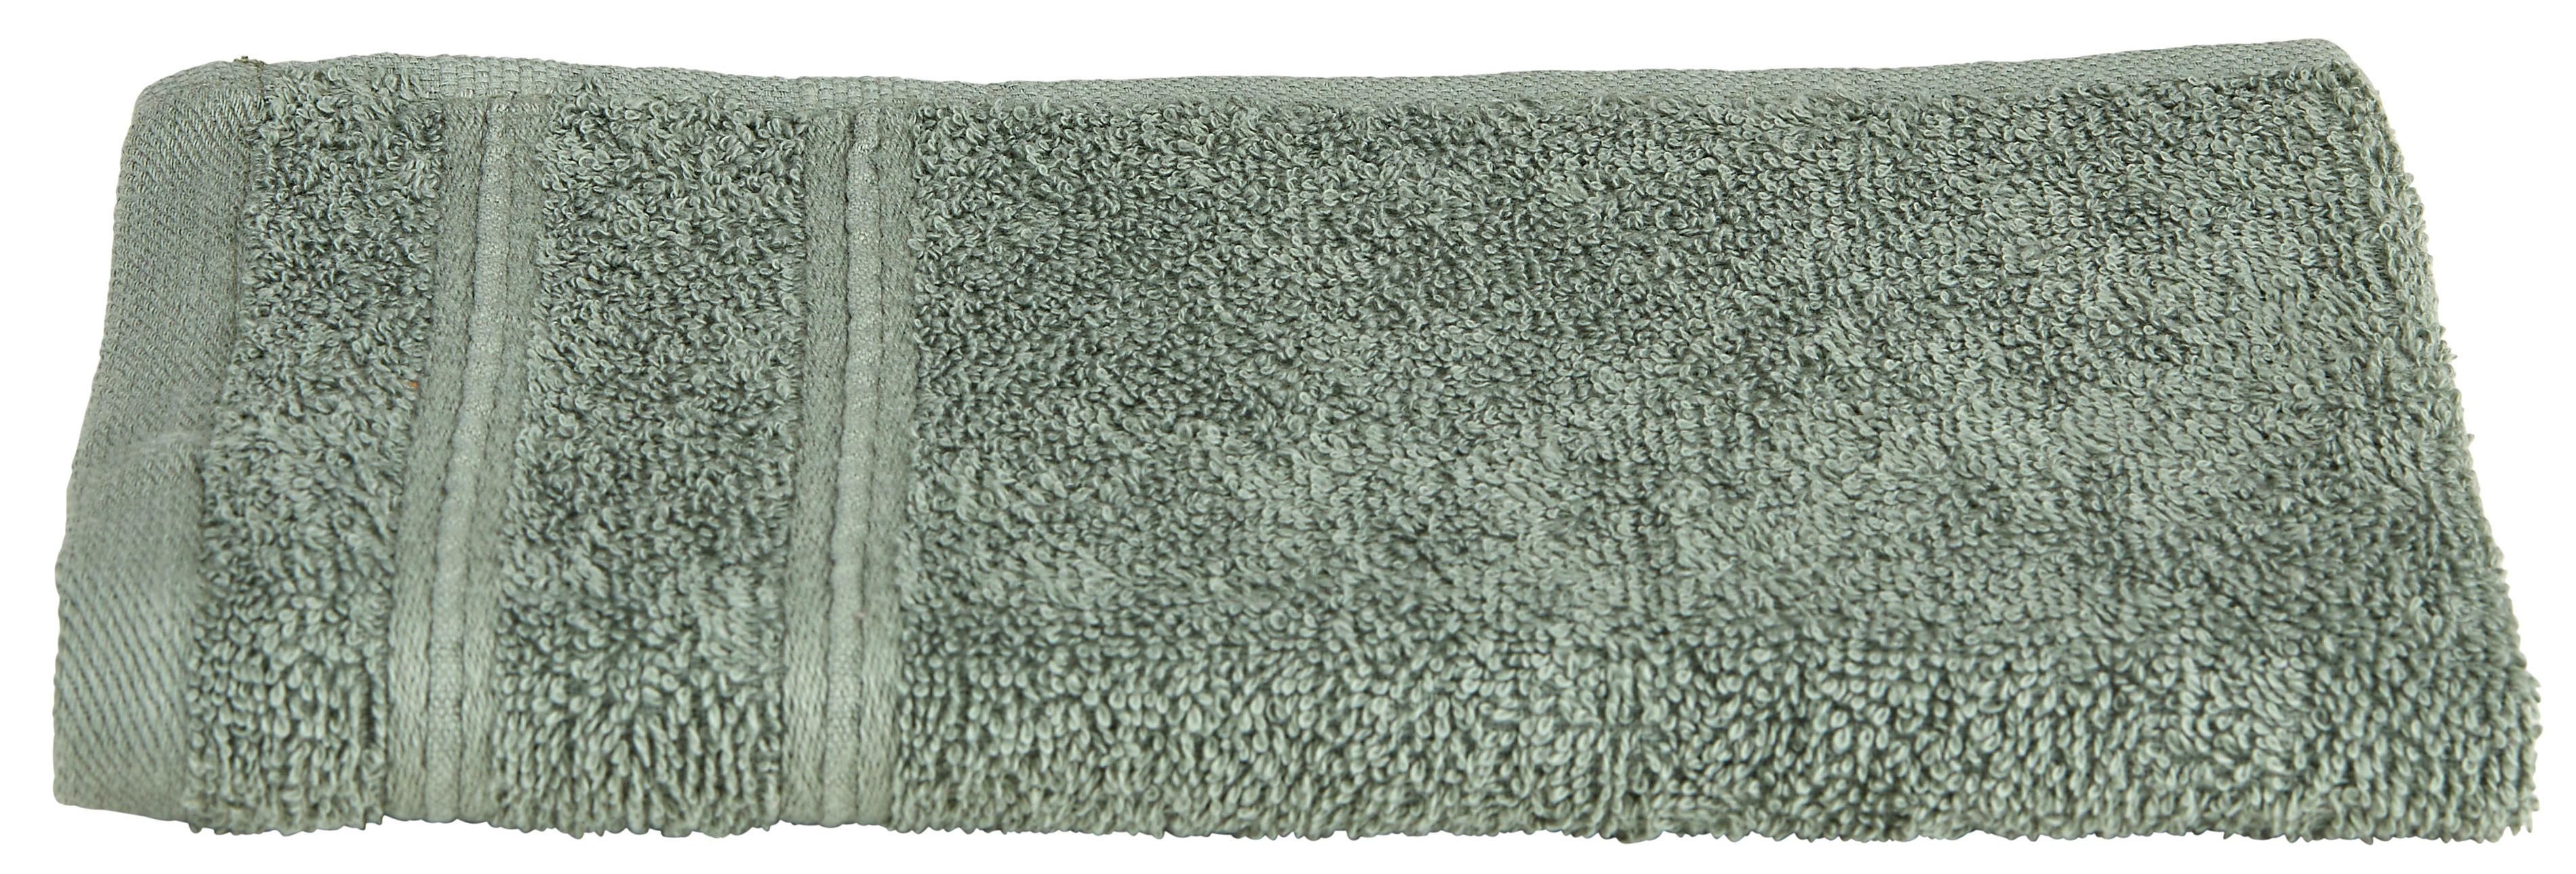 Ručník Pro Hosty Melanie, 30/50cm, Zelená - zelená, textil (30/50cm) - Modern Living